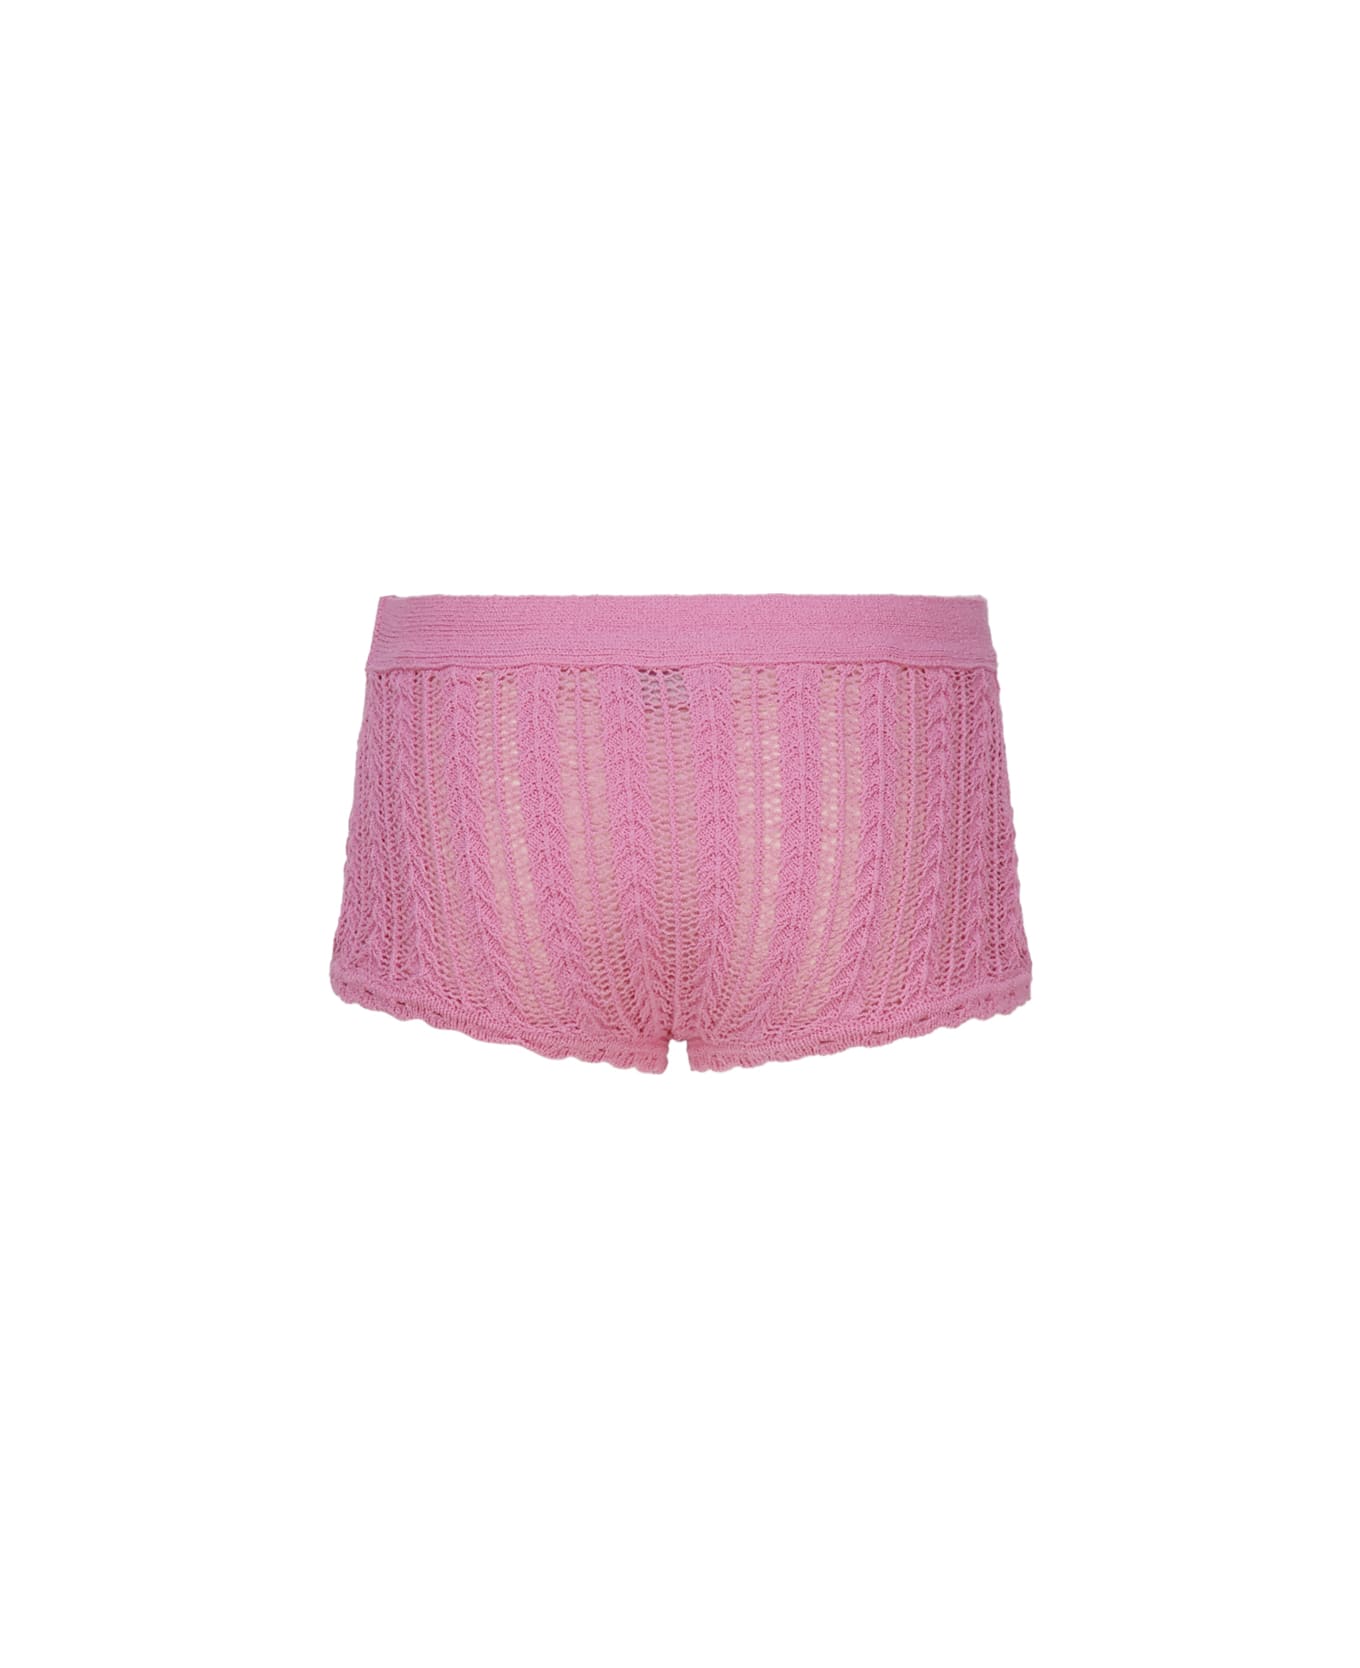 Blumarine Cotton Knit Shorts - Pink geranio